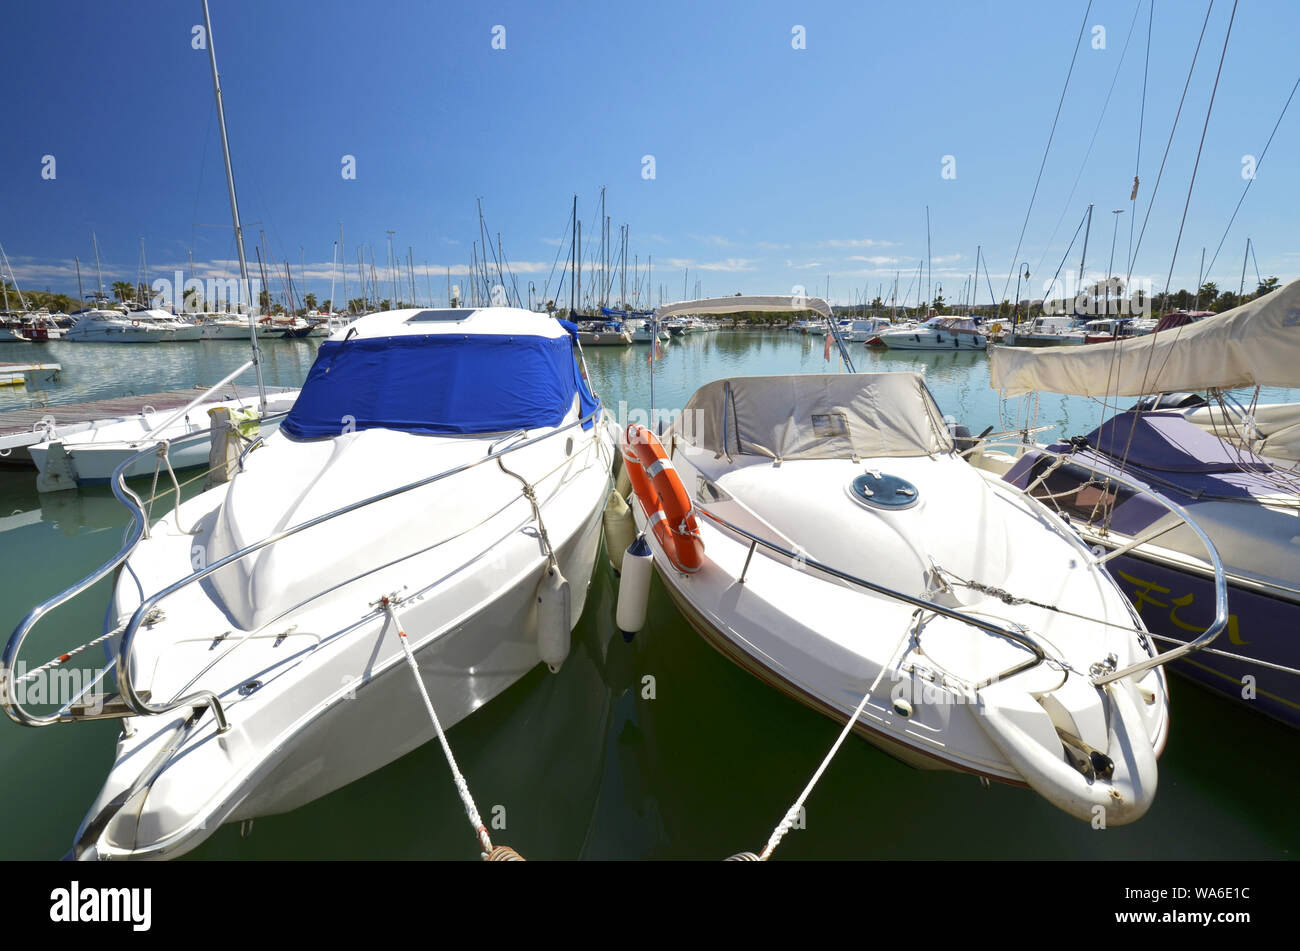 marina at Guardamar del Segura, spanish coast Stock Photo